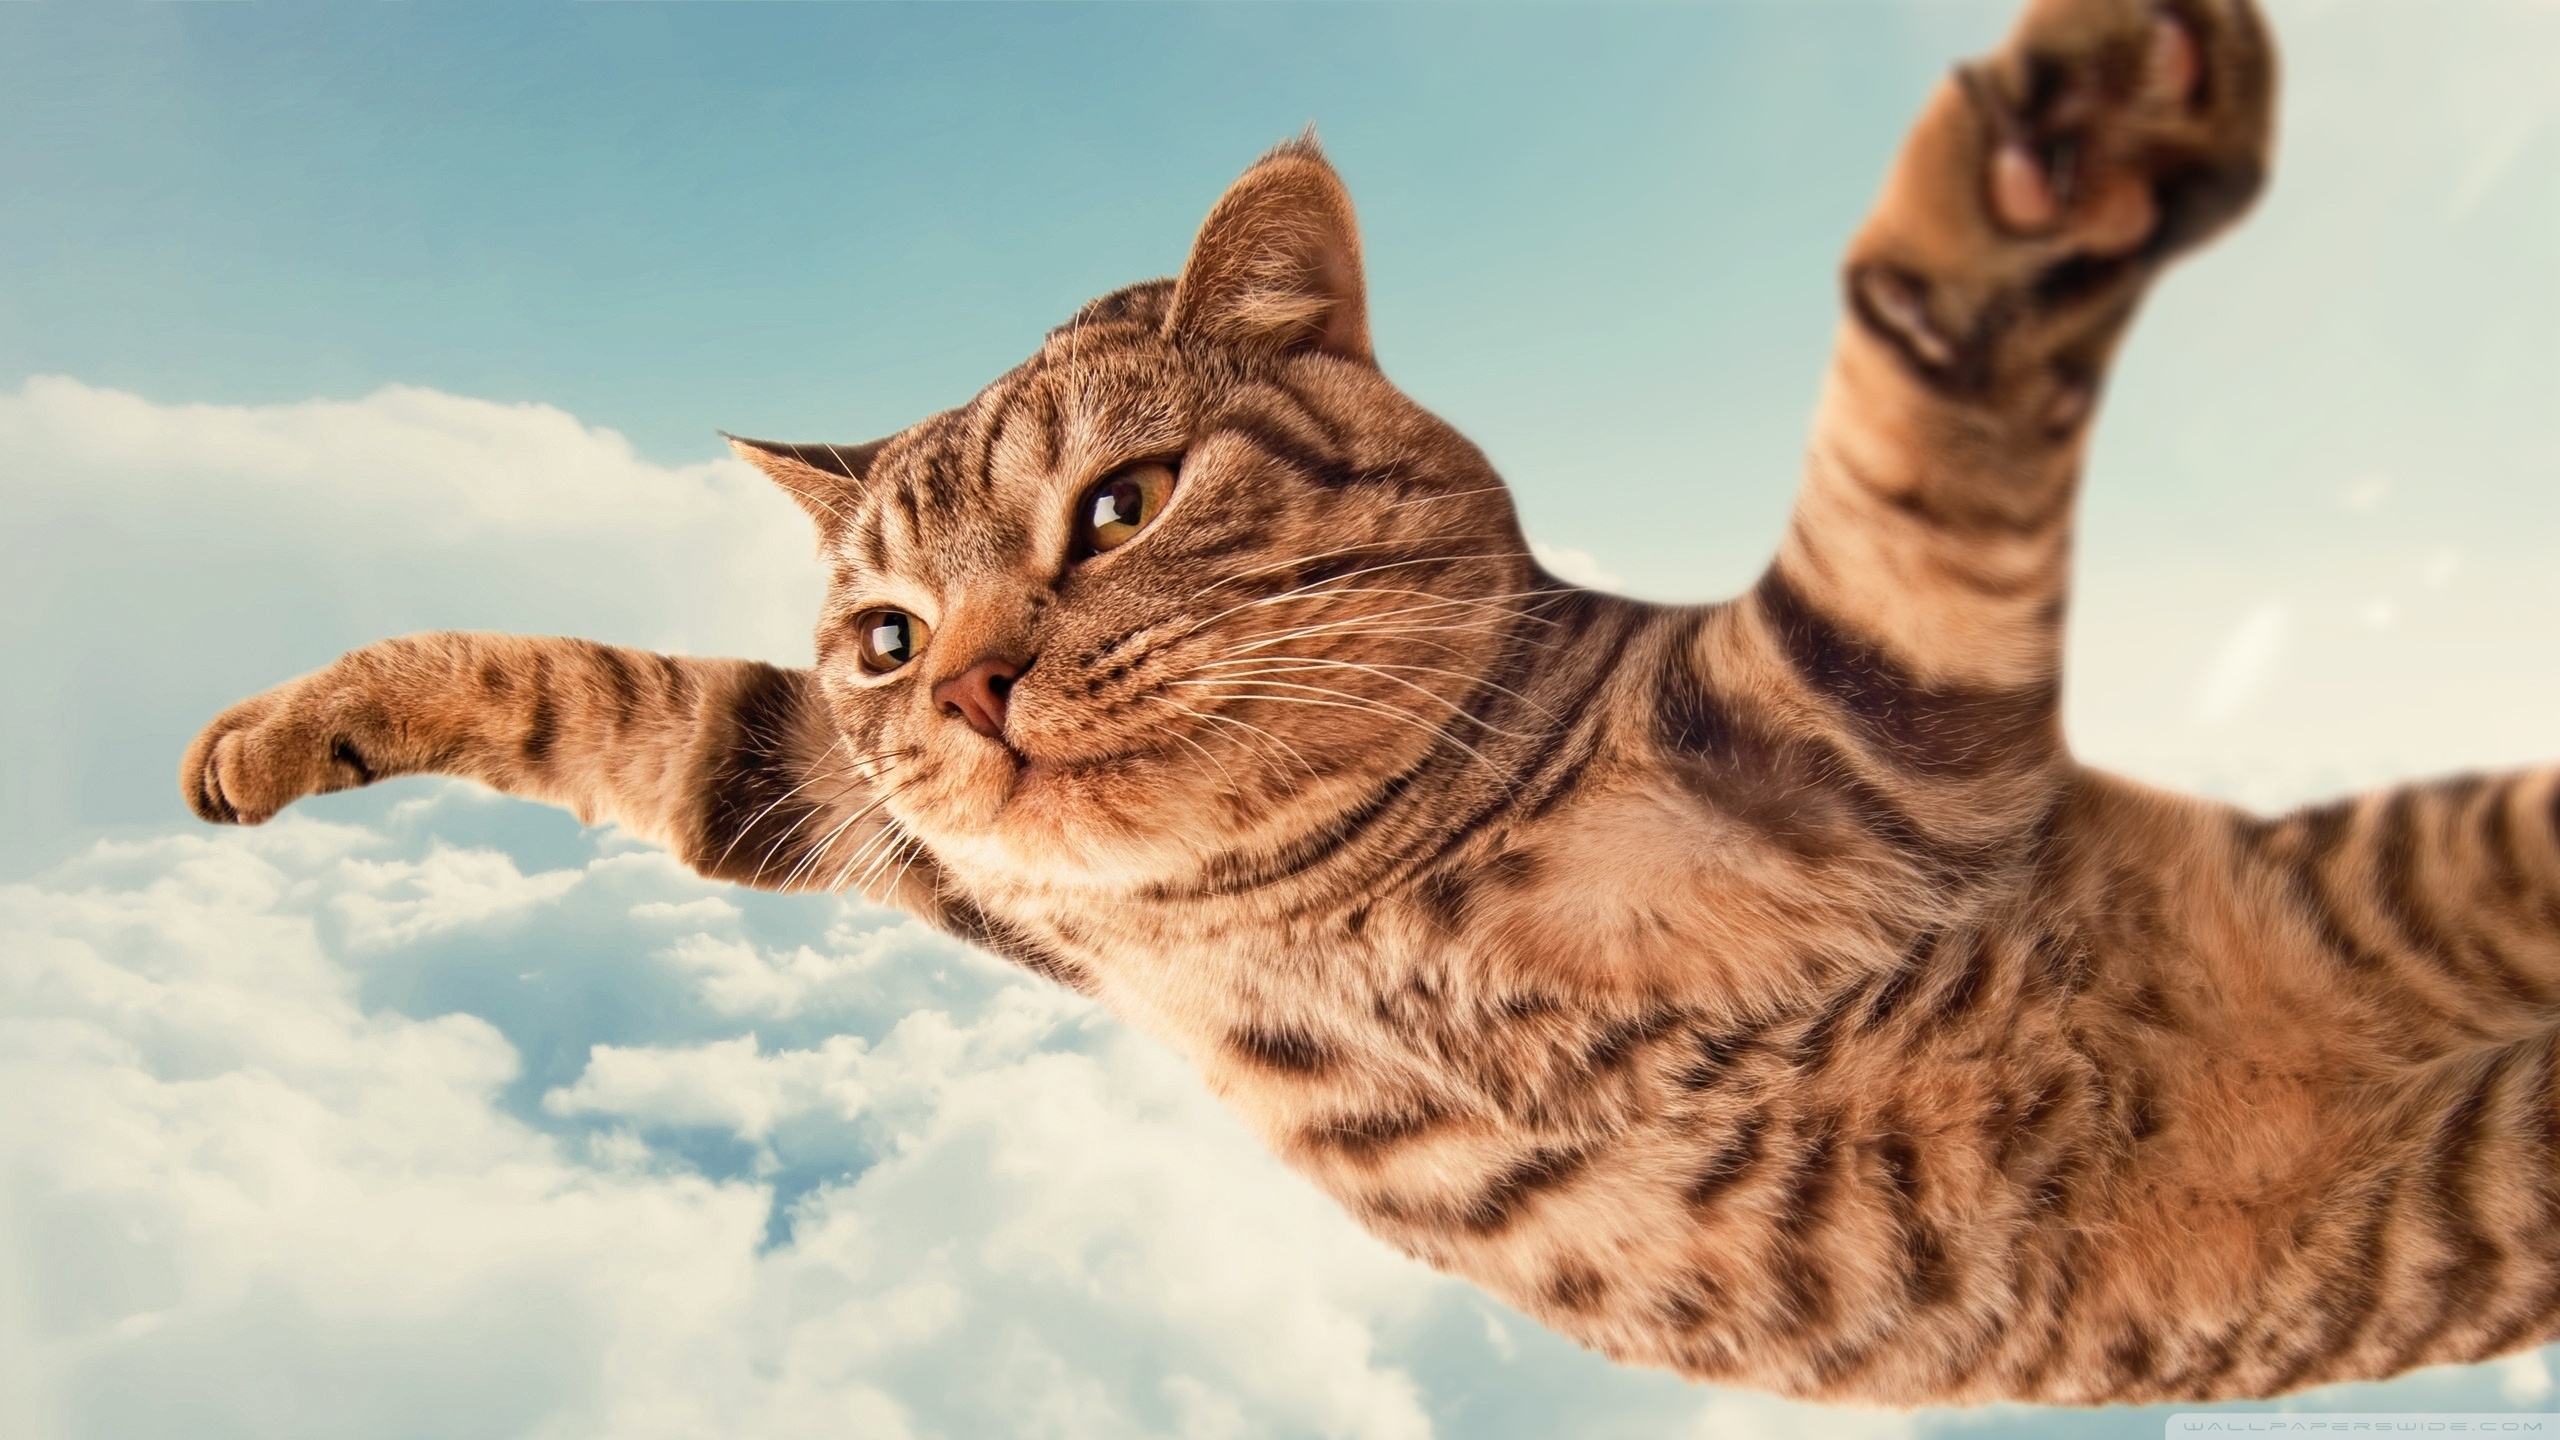 10 Top Funny Cat Desktop Wallpaper FULL HD 1080p For PC ...